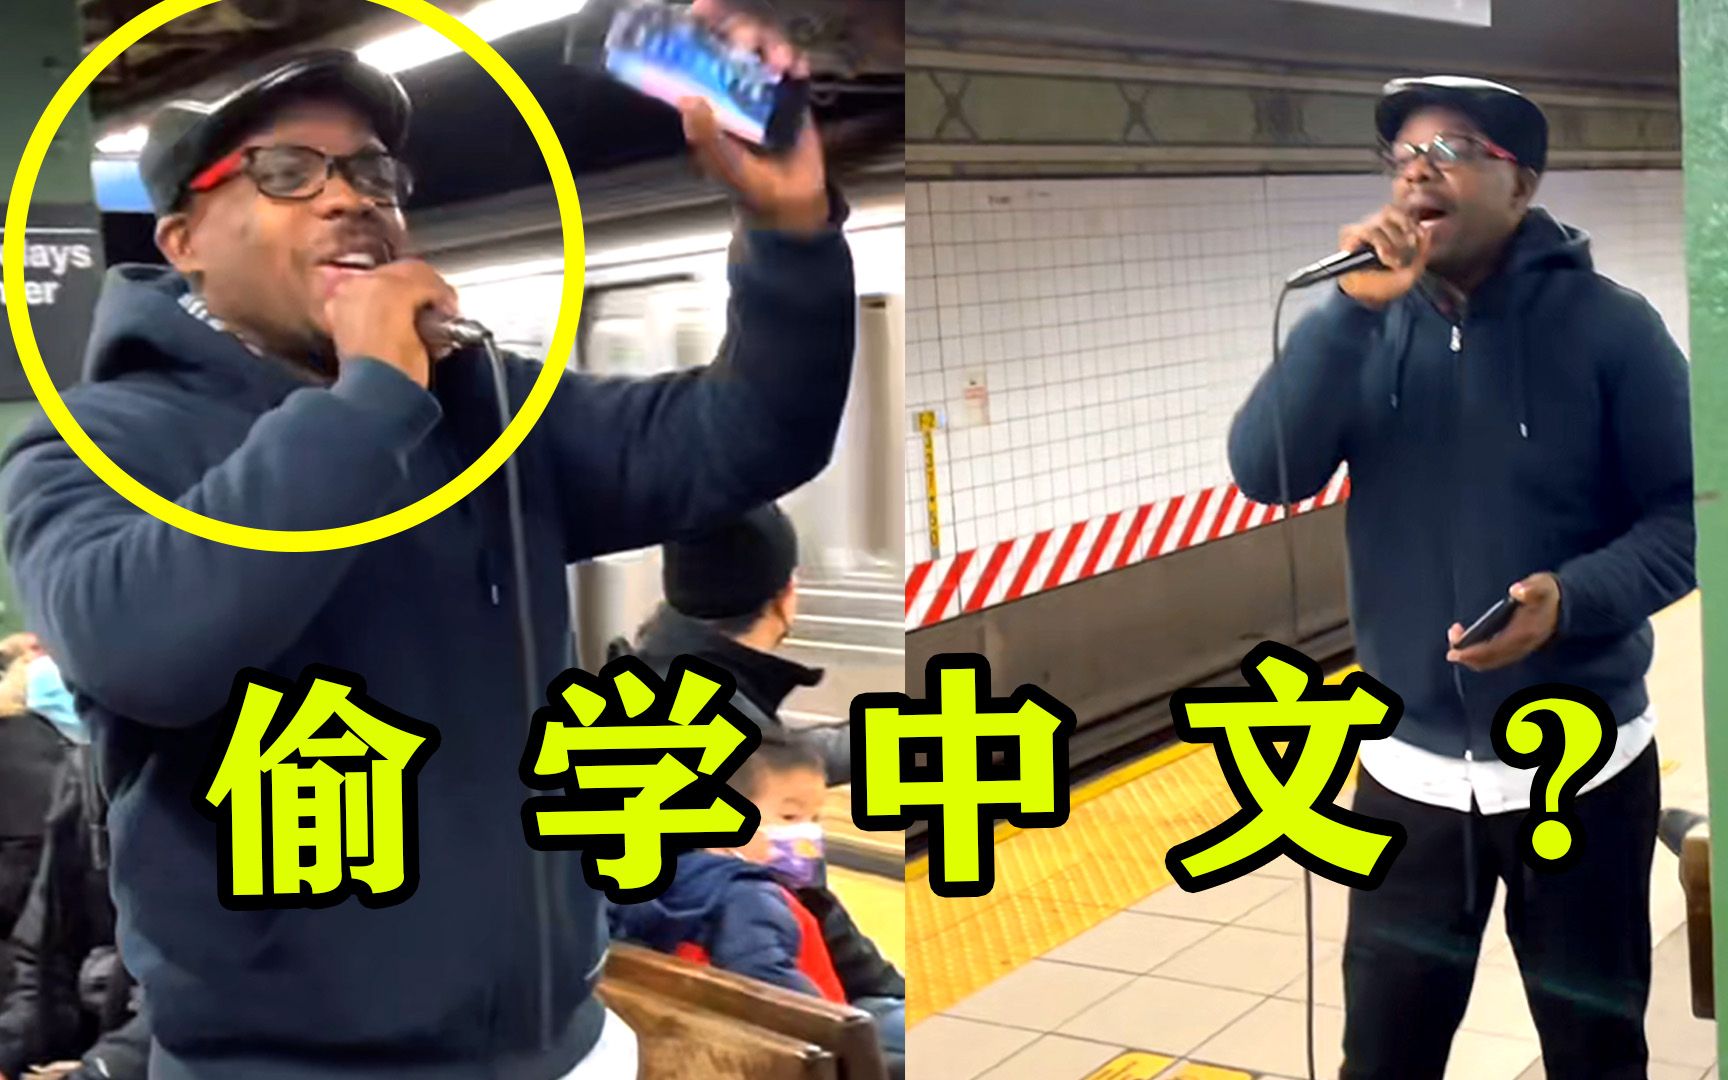 纽约地铁听到“中文歌”，本以为中国人唱的，走近一看是黑人小哥